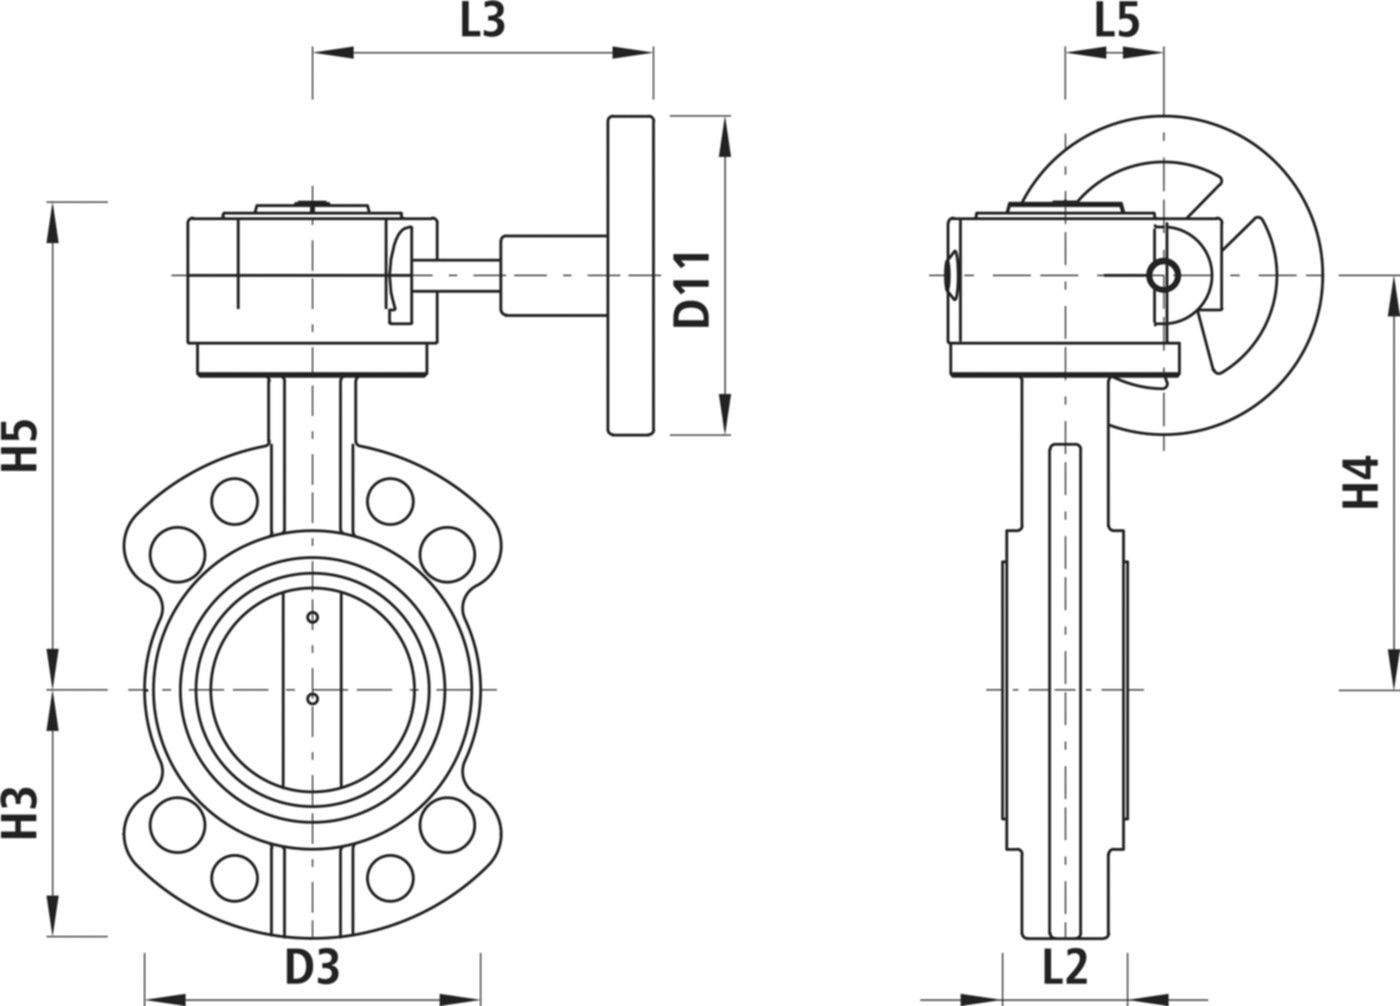 Absperrklappe mit Getriebe Typ AW 9941 DN 125 PN 16 - Hawle Absperrklappen